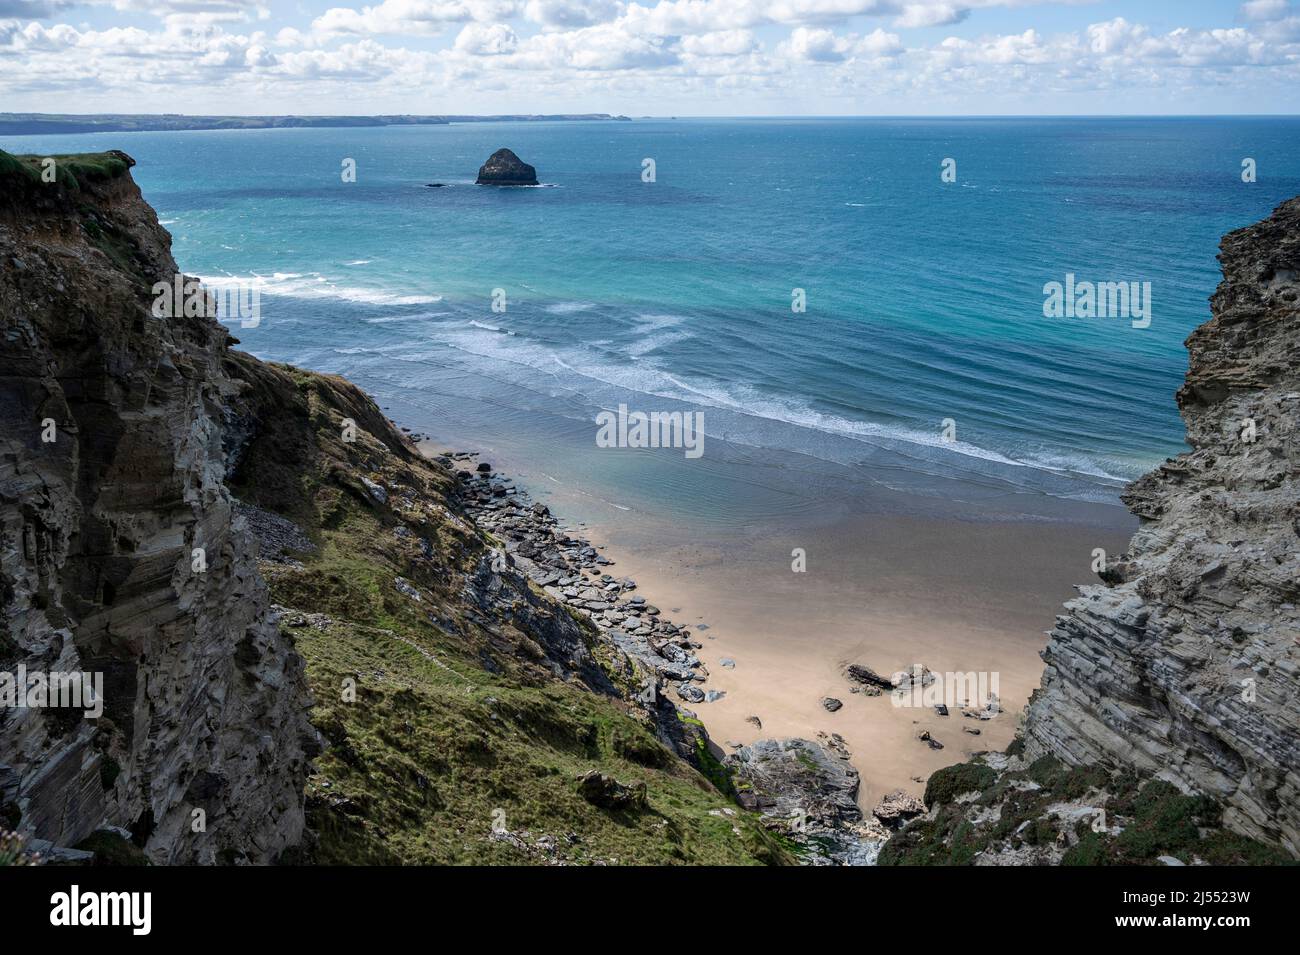 Le sable doré de la plage de Trebarwith Strand, North Cornwall, Royaume-Uni avec l'île de Gull Rock, les falaises et la mer turquoise. Banque D'Images